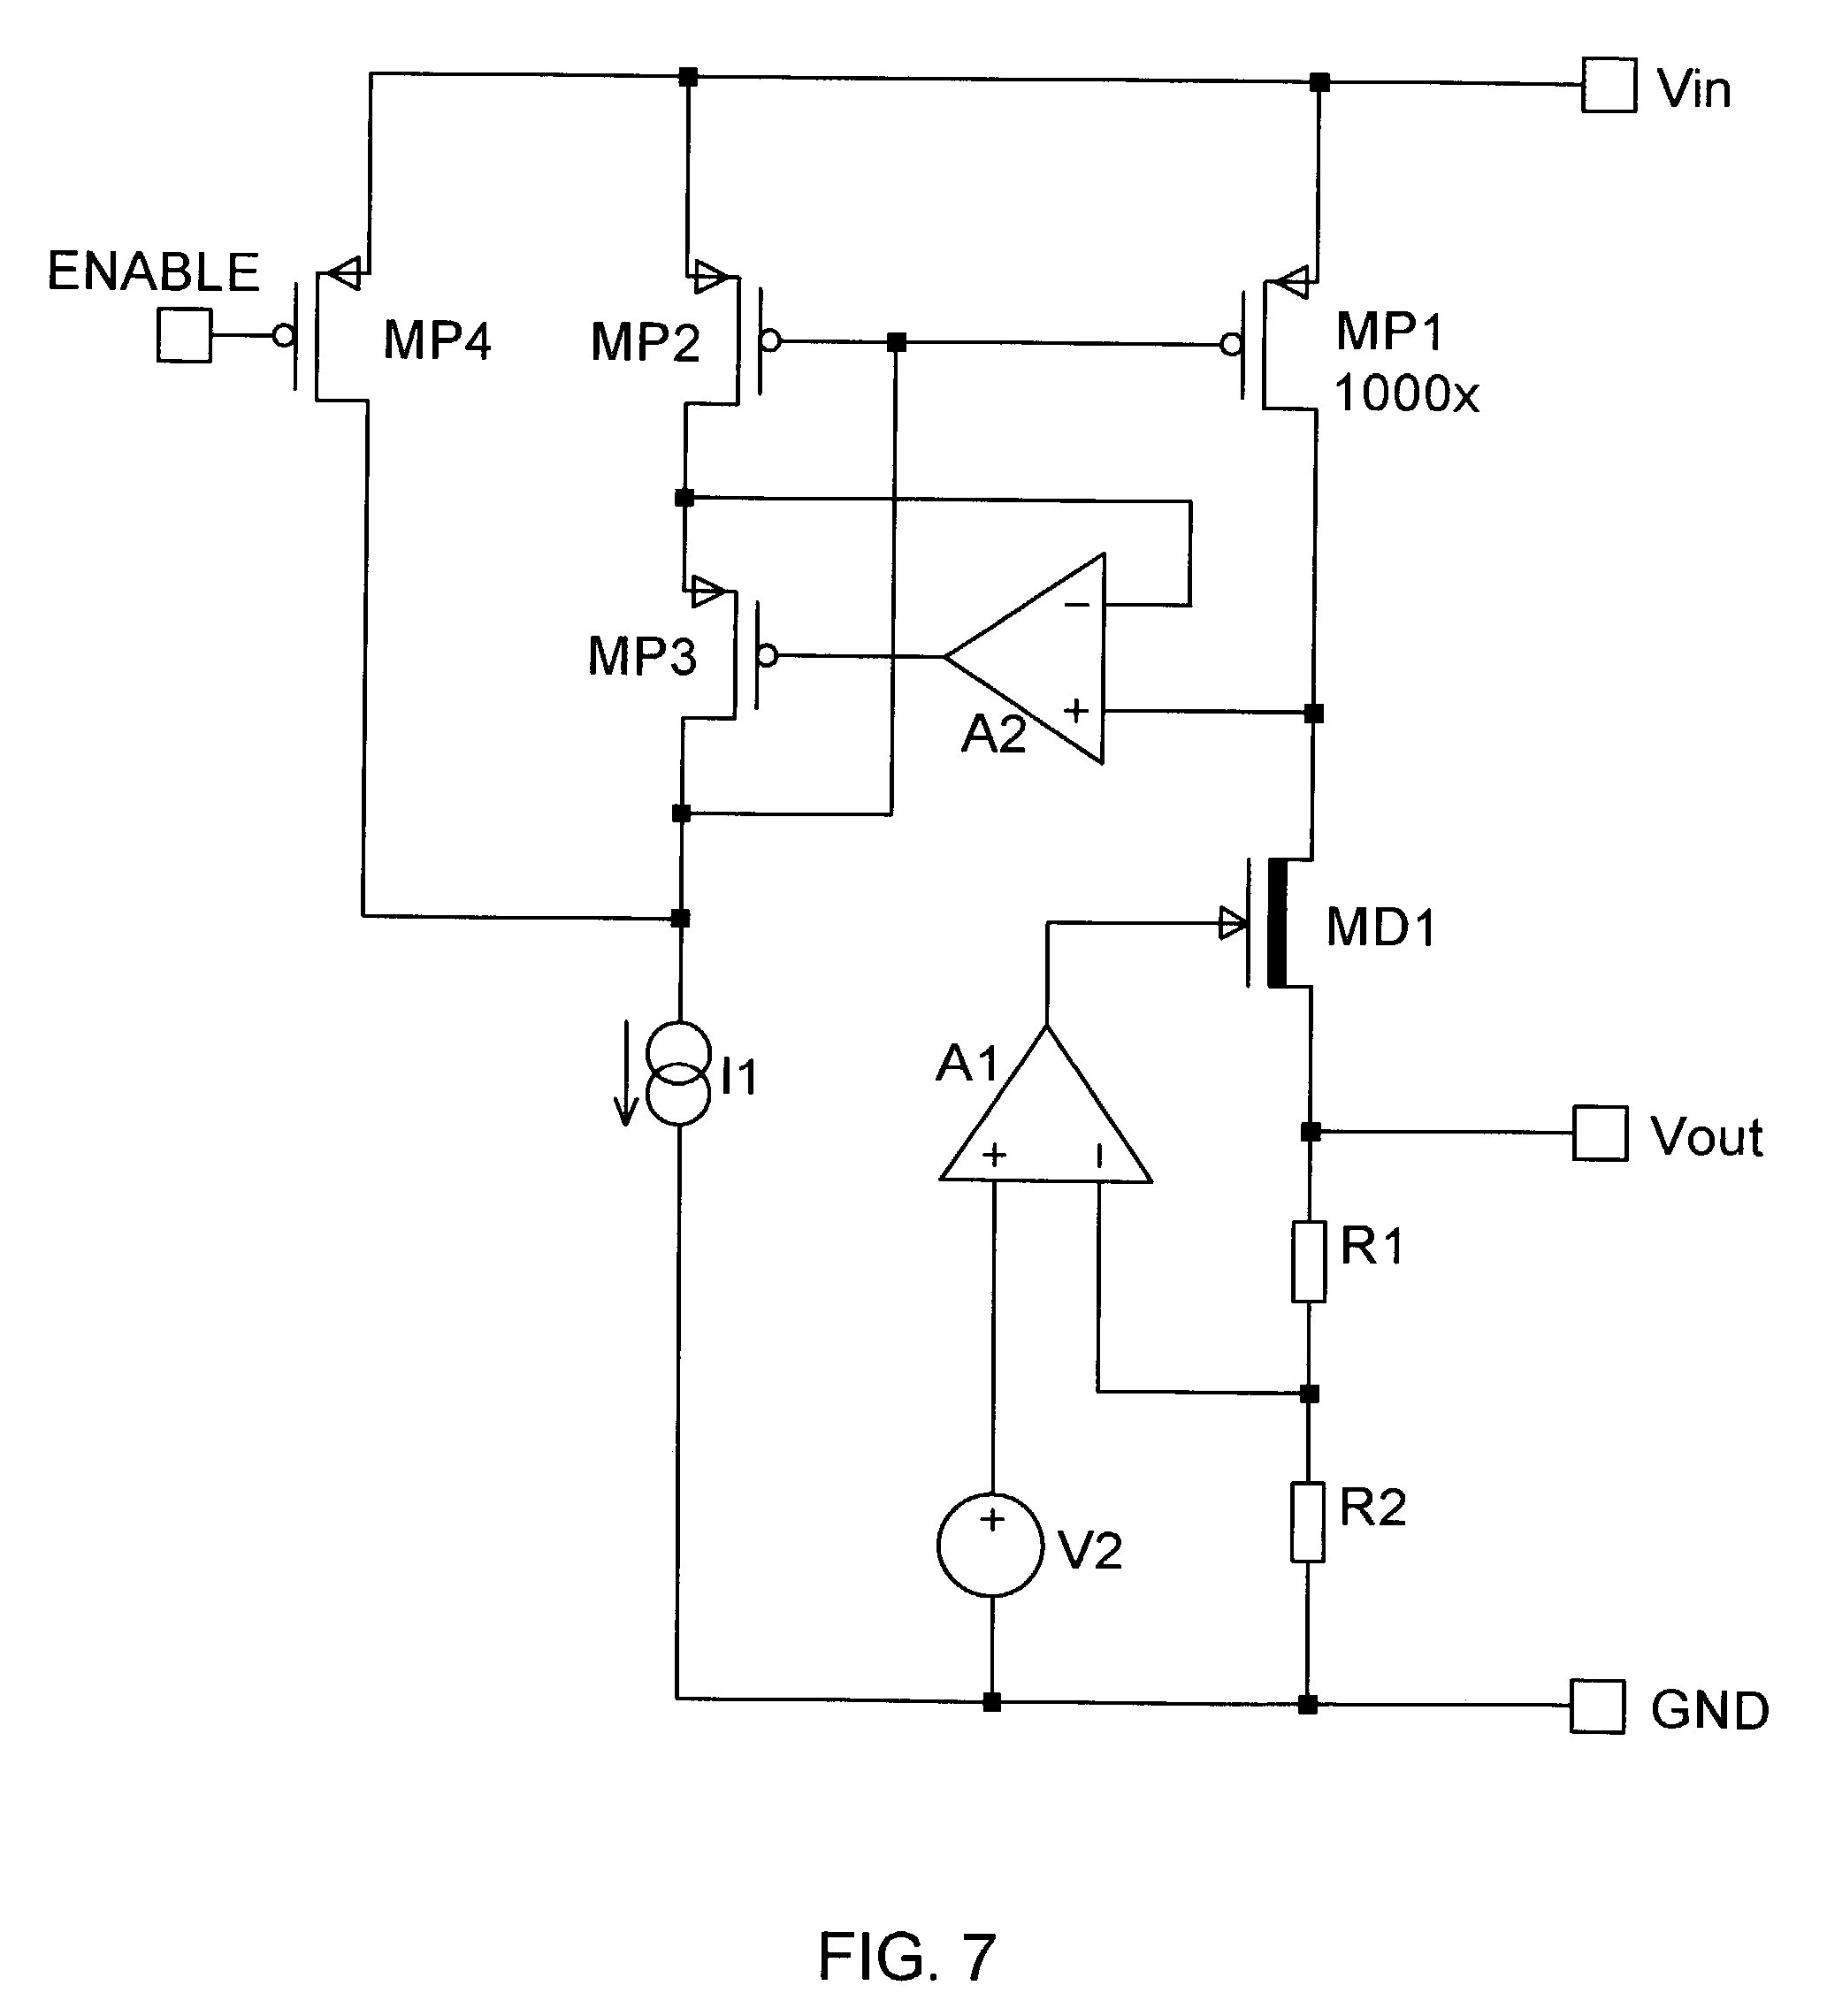 12 Volt Alternator Wiring Diagram 12 Volt Alternator Wiring Diagram Inspirational Voltage Regulator Diagram Wiring